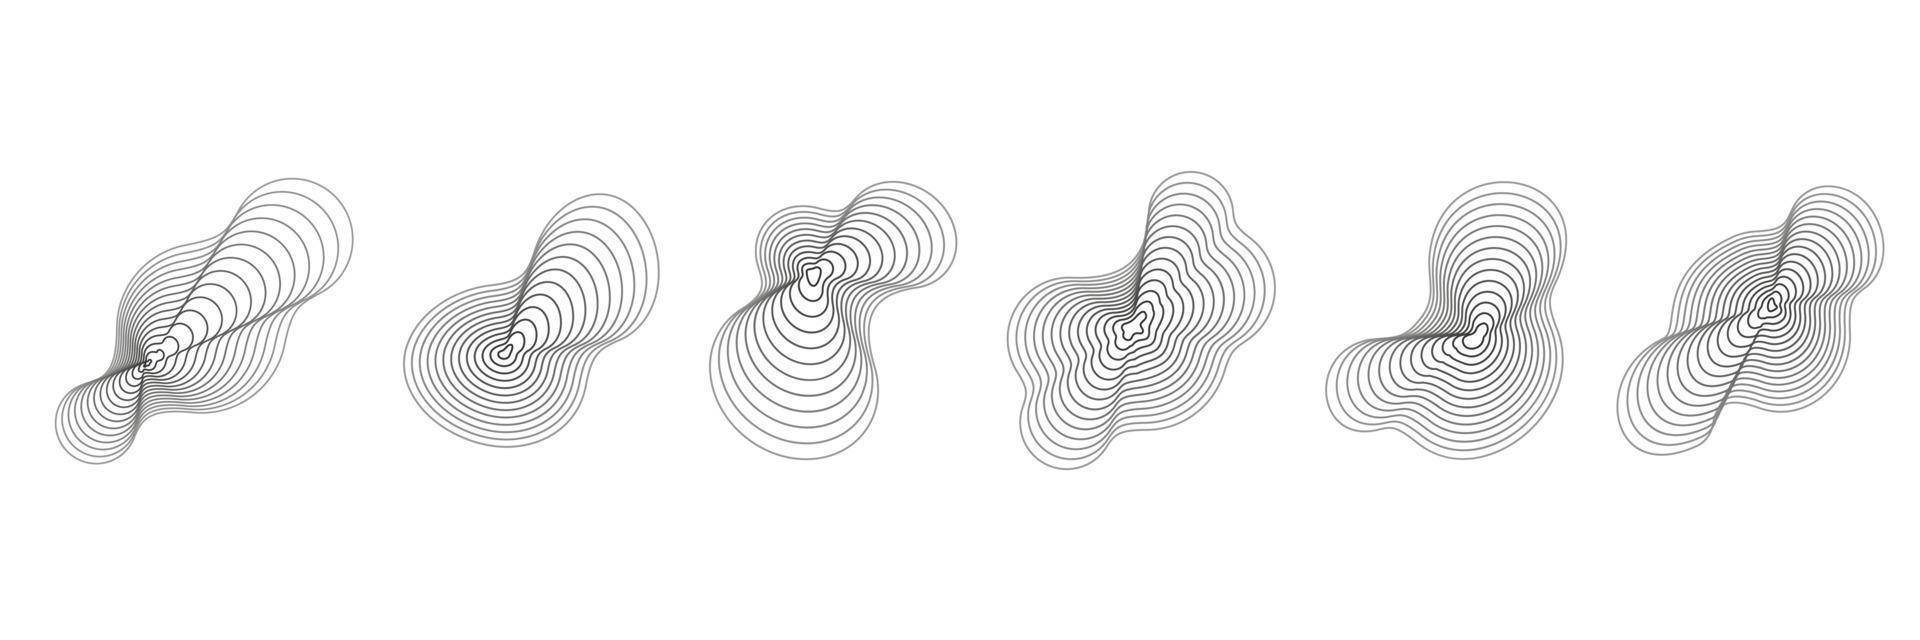 círculos de topografía abstracta. formas de textura orgánica. conjunto de ilustraciones de contorno vectorial. vector